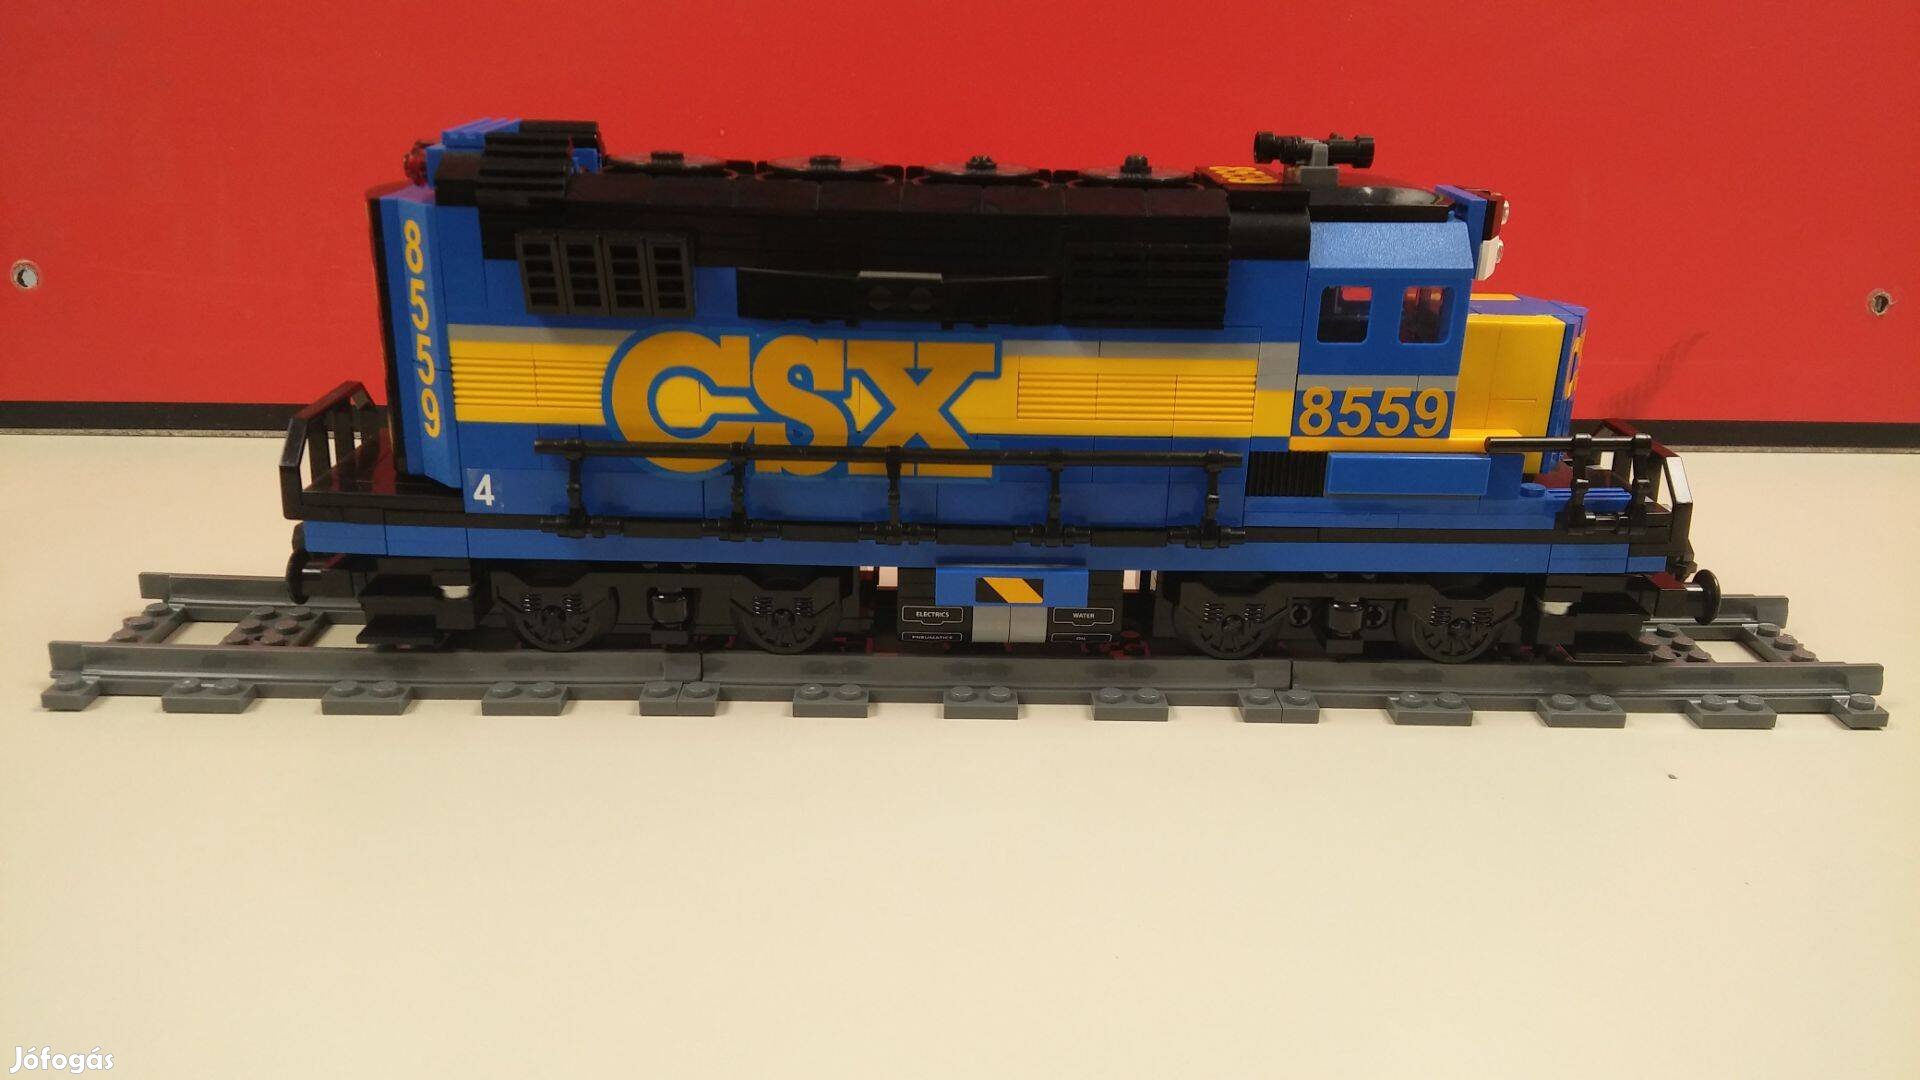 LEGO Vonat Egyedi építésű vasúti mozdony Csx (MOC)